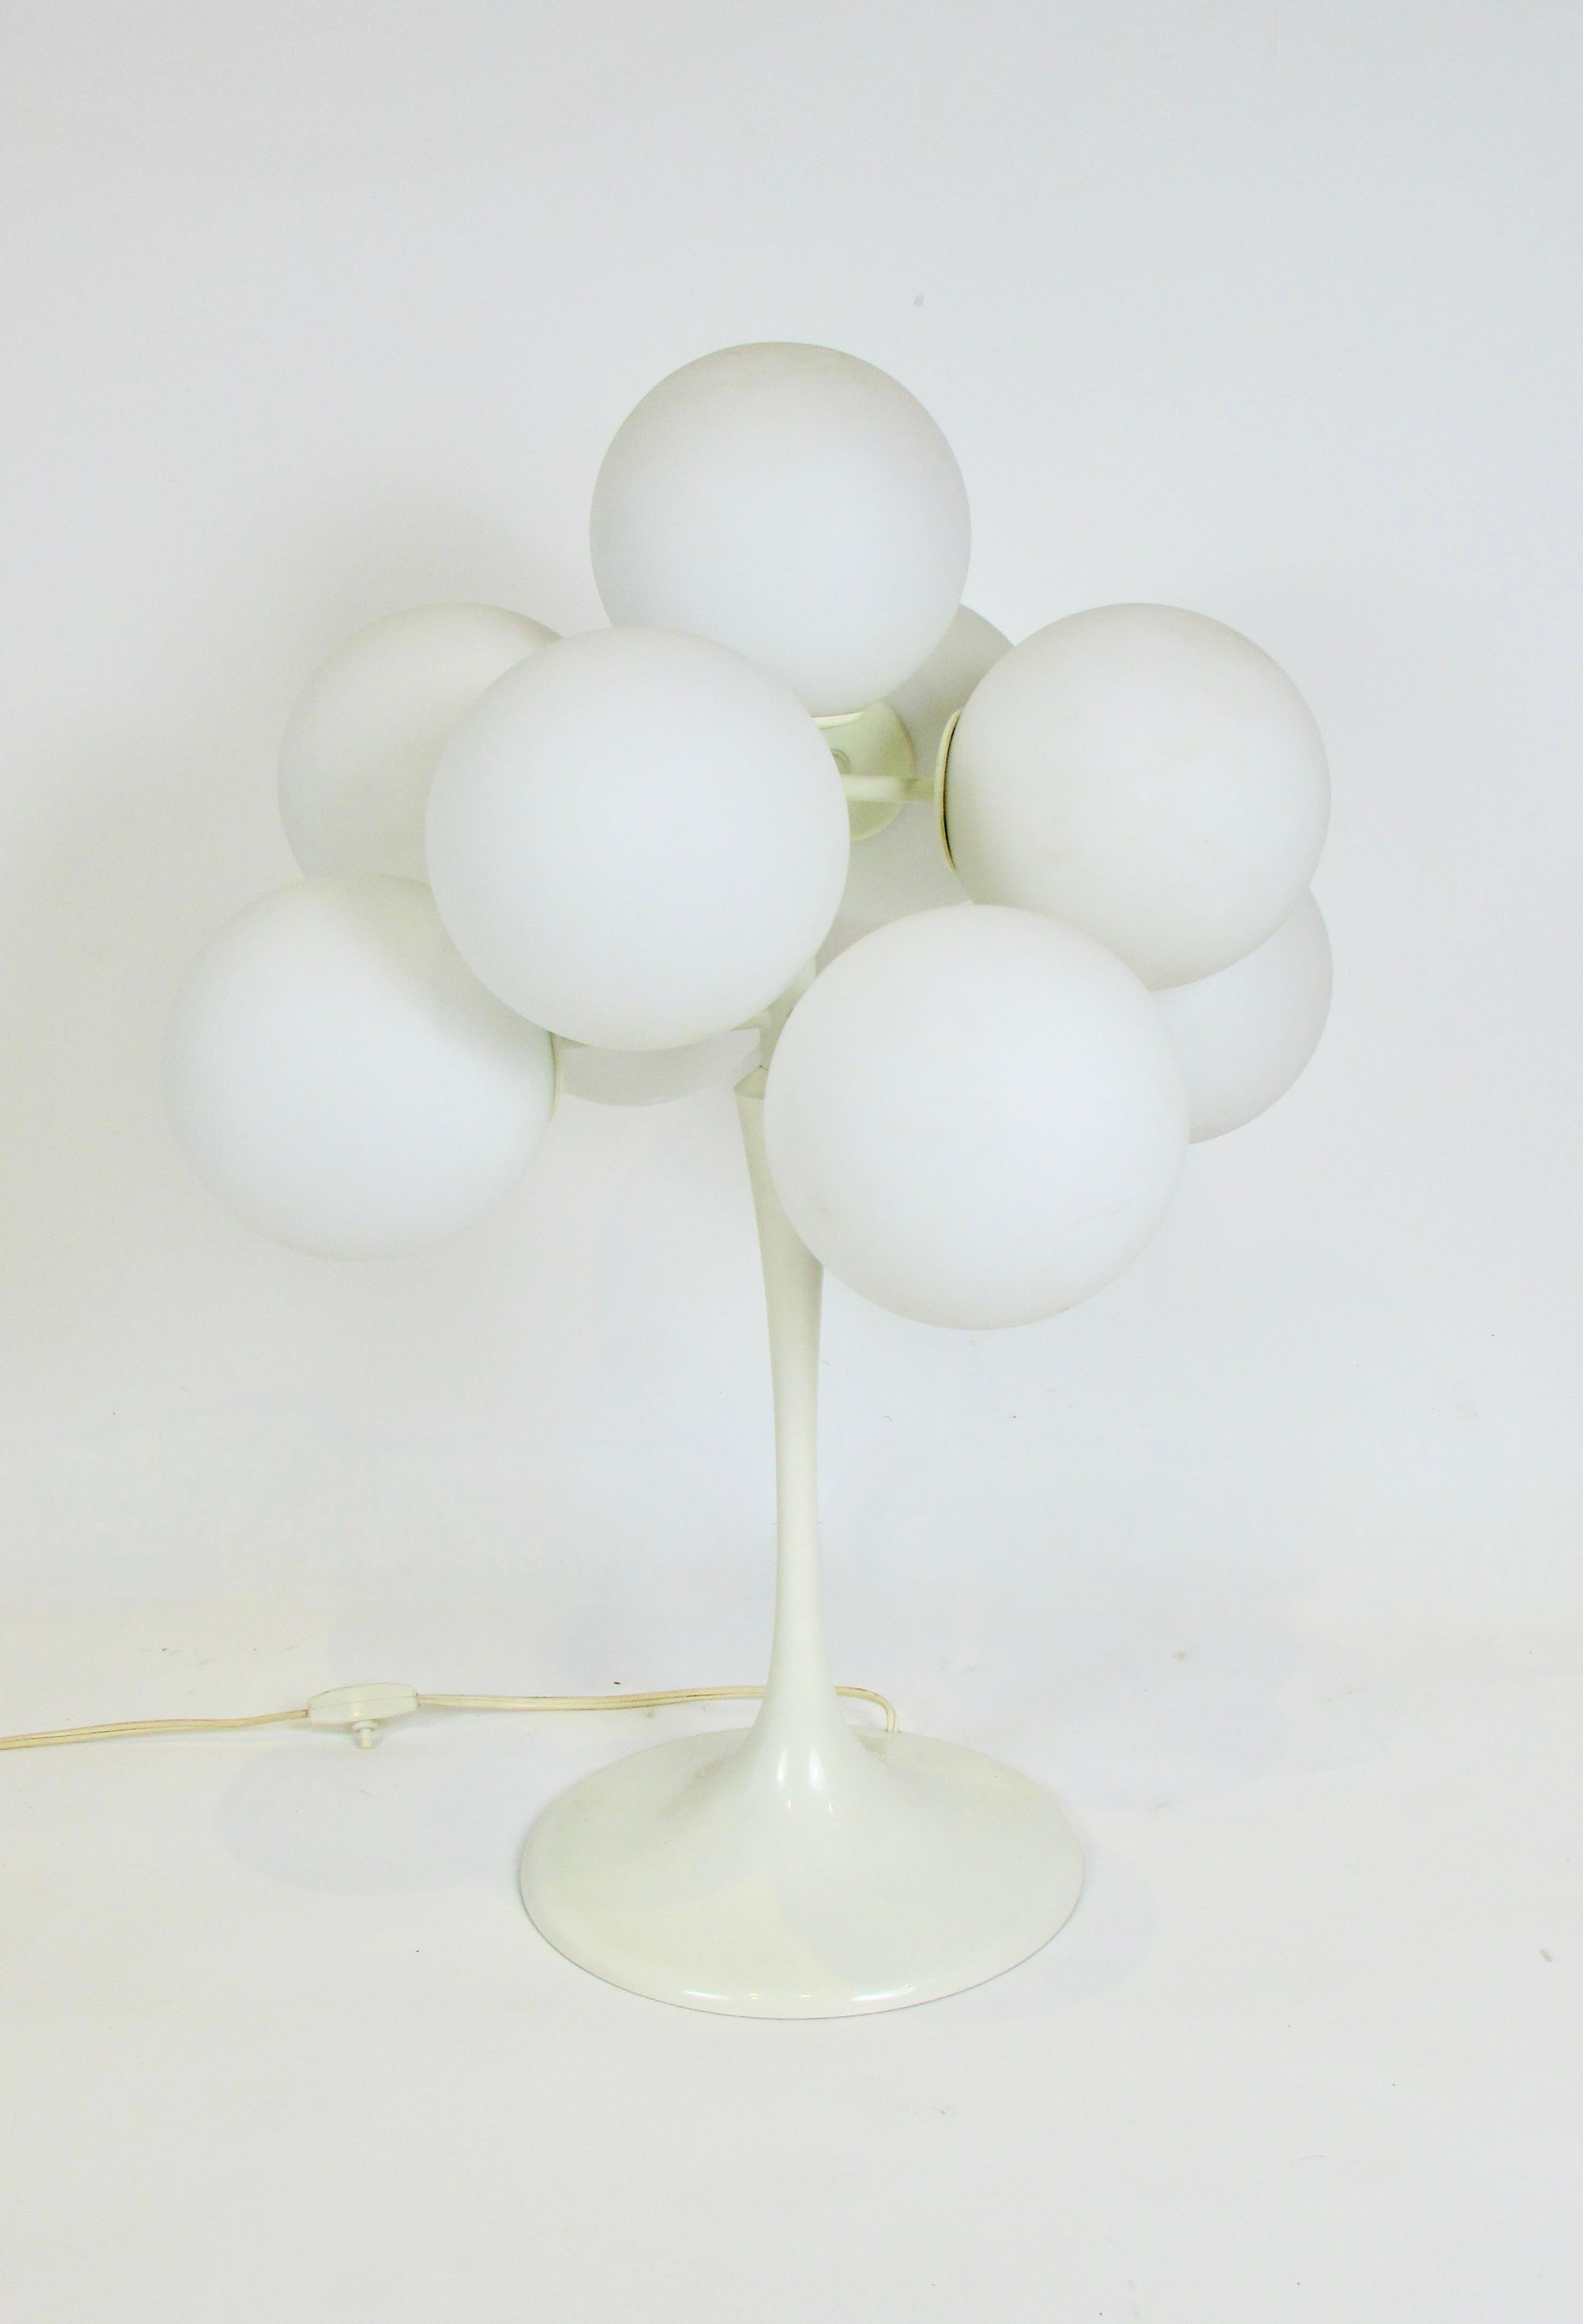 Lampe conçue par l'architecte Max Billing et produite par BAG Turgi Suisse. La base émaillée blanche contient neuf globes ronds en verre blanc givré. Emet une belle lueur chaude et réconfortante lorsqu'elle est allumée. 